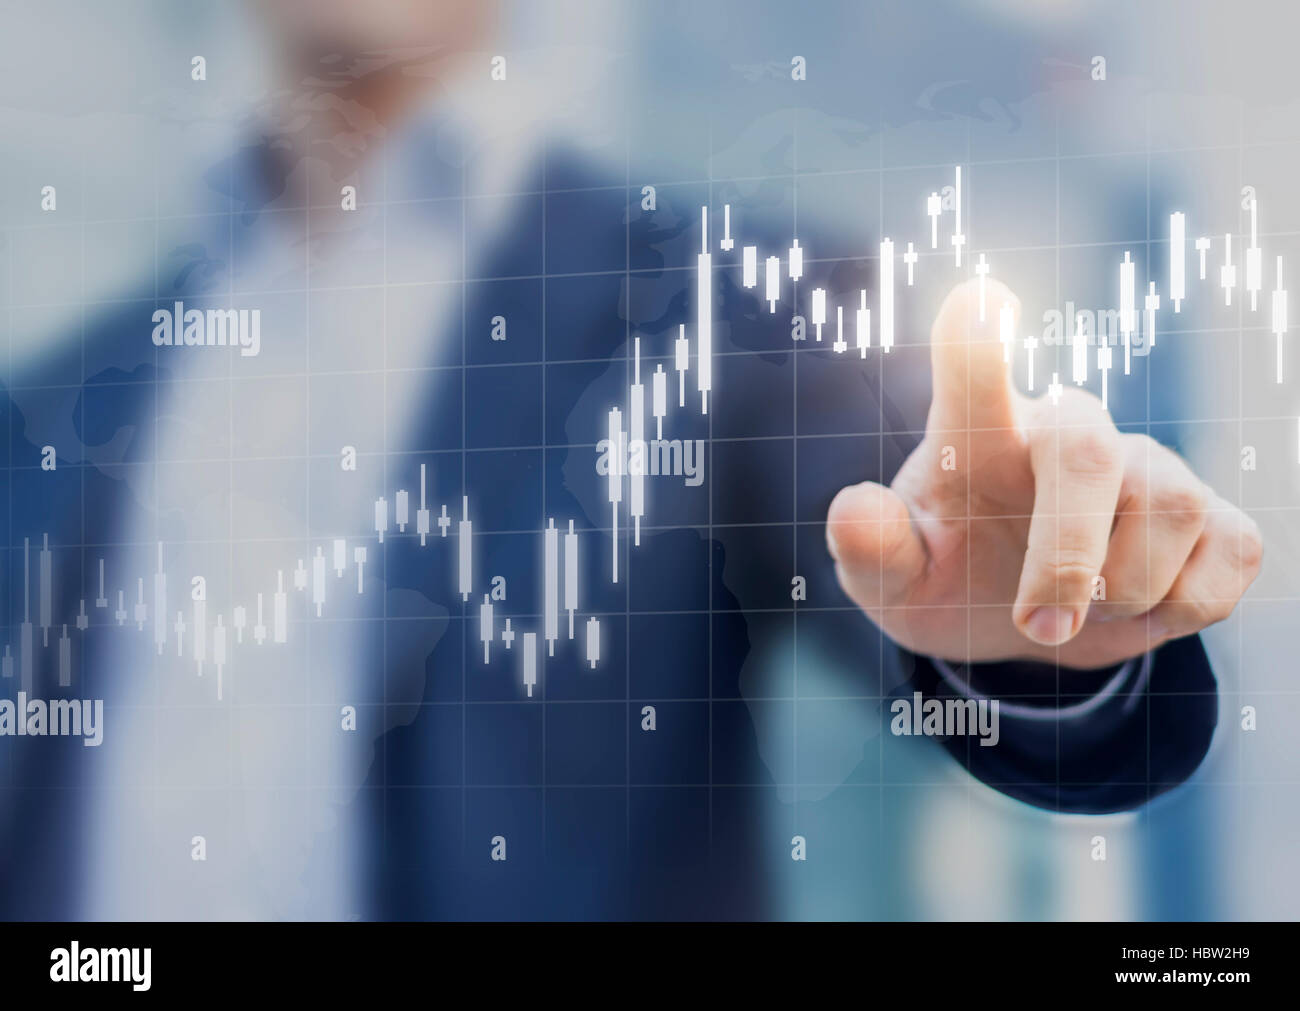 Grafico finanziario mostra aumento del prezzo nel mercato azionario, concetto astratto di finanza, affari persona toccando il grafico Foto Stock